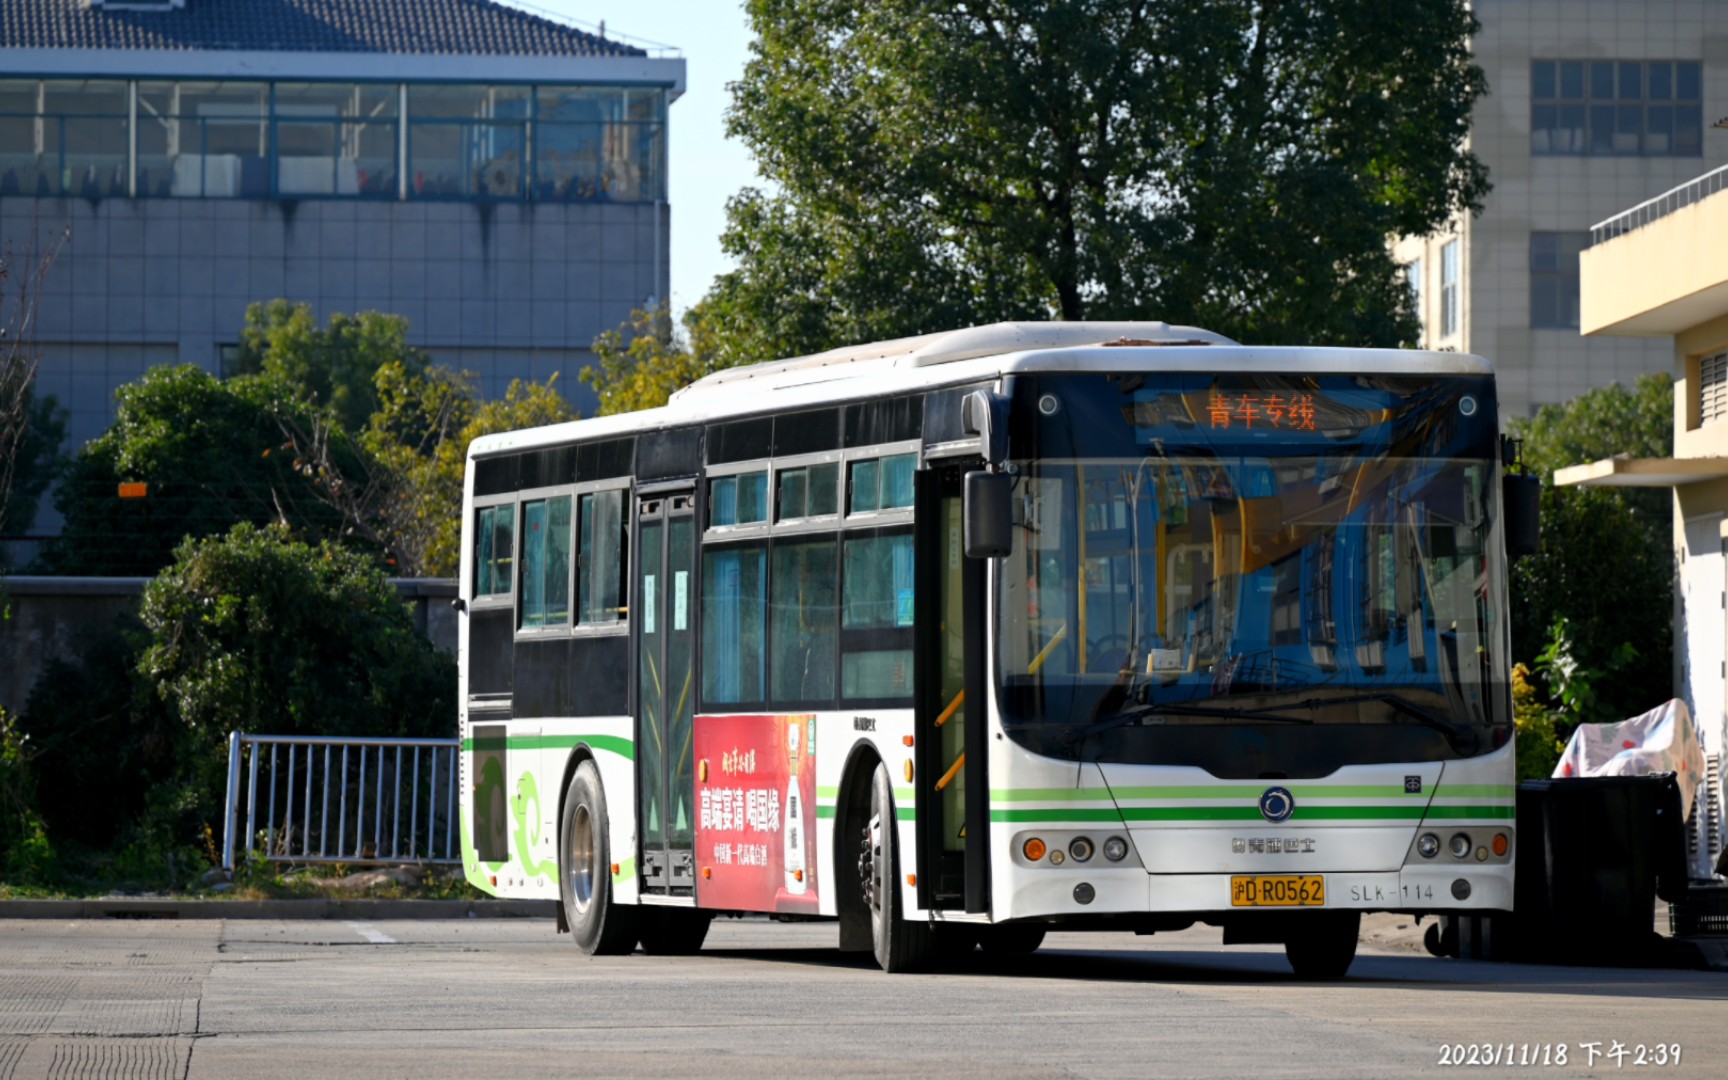 【青车专线】上海公交青浦巴士青车专线申龙slk6129us55自编号slk车辆